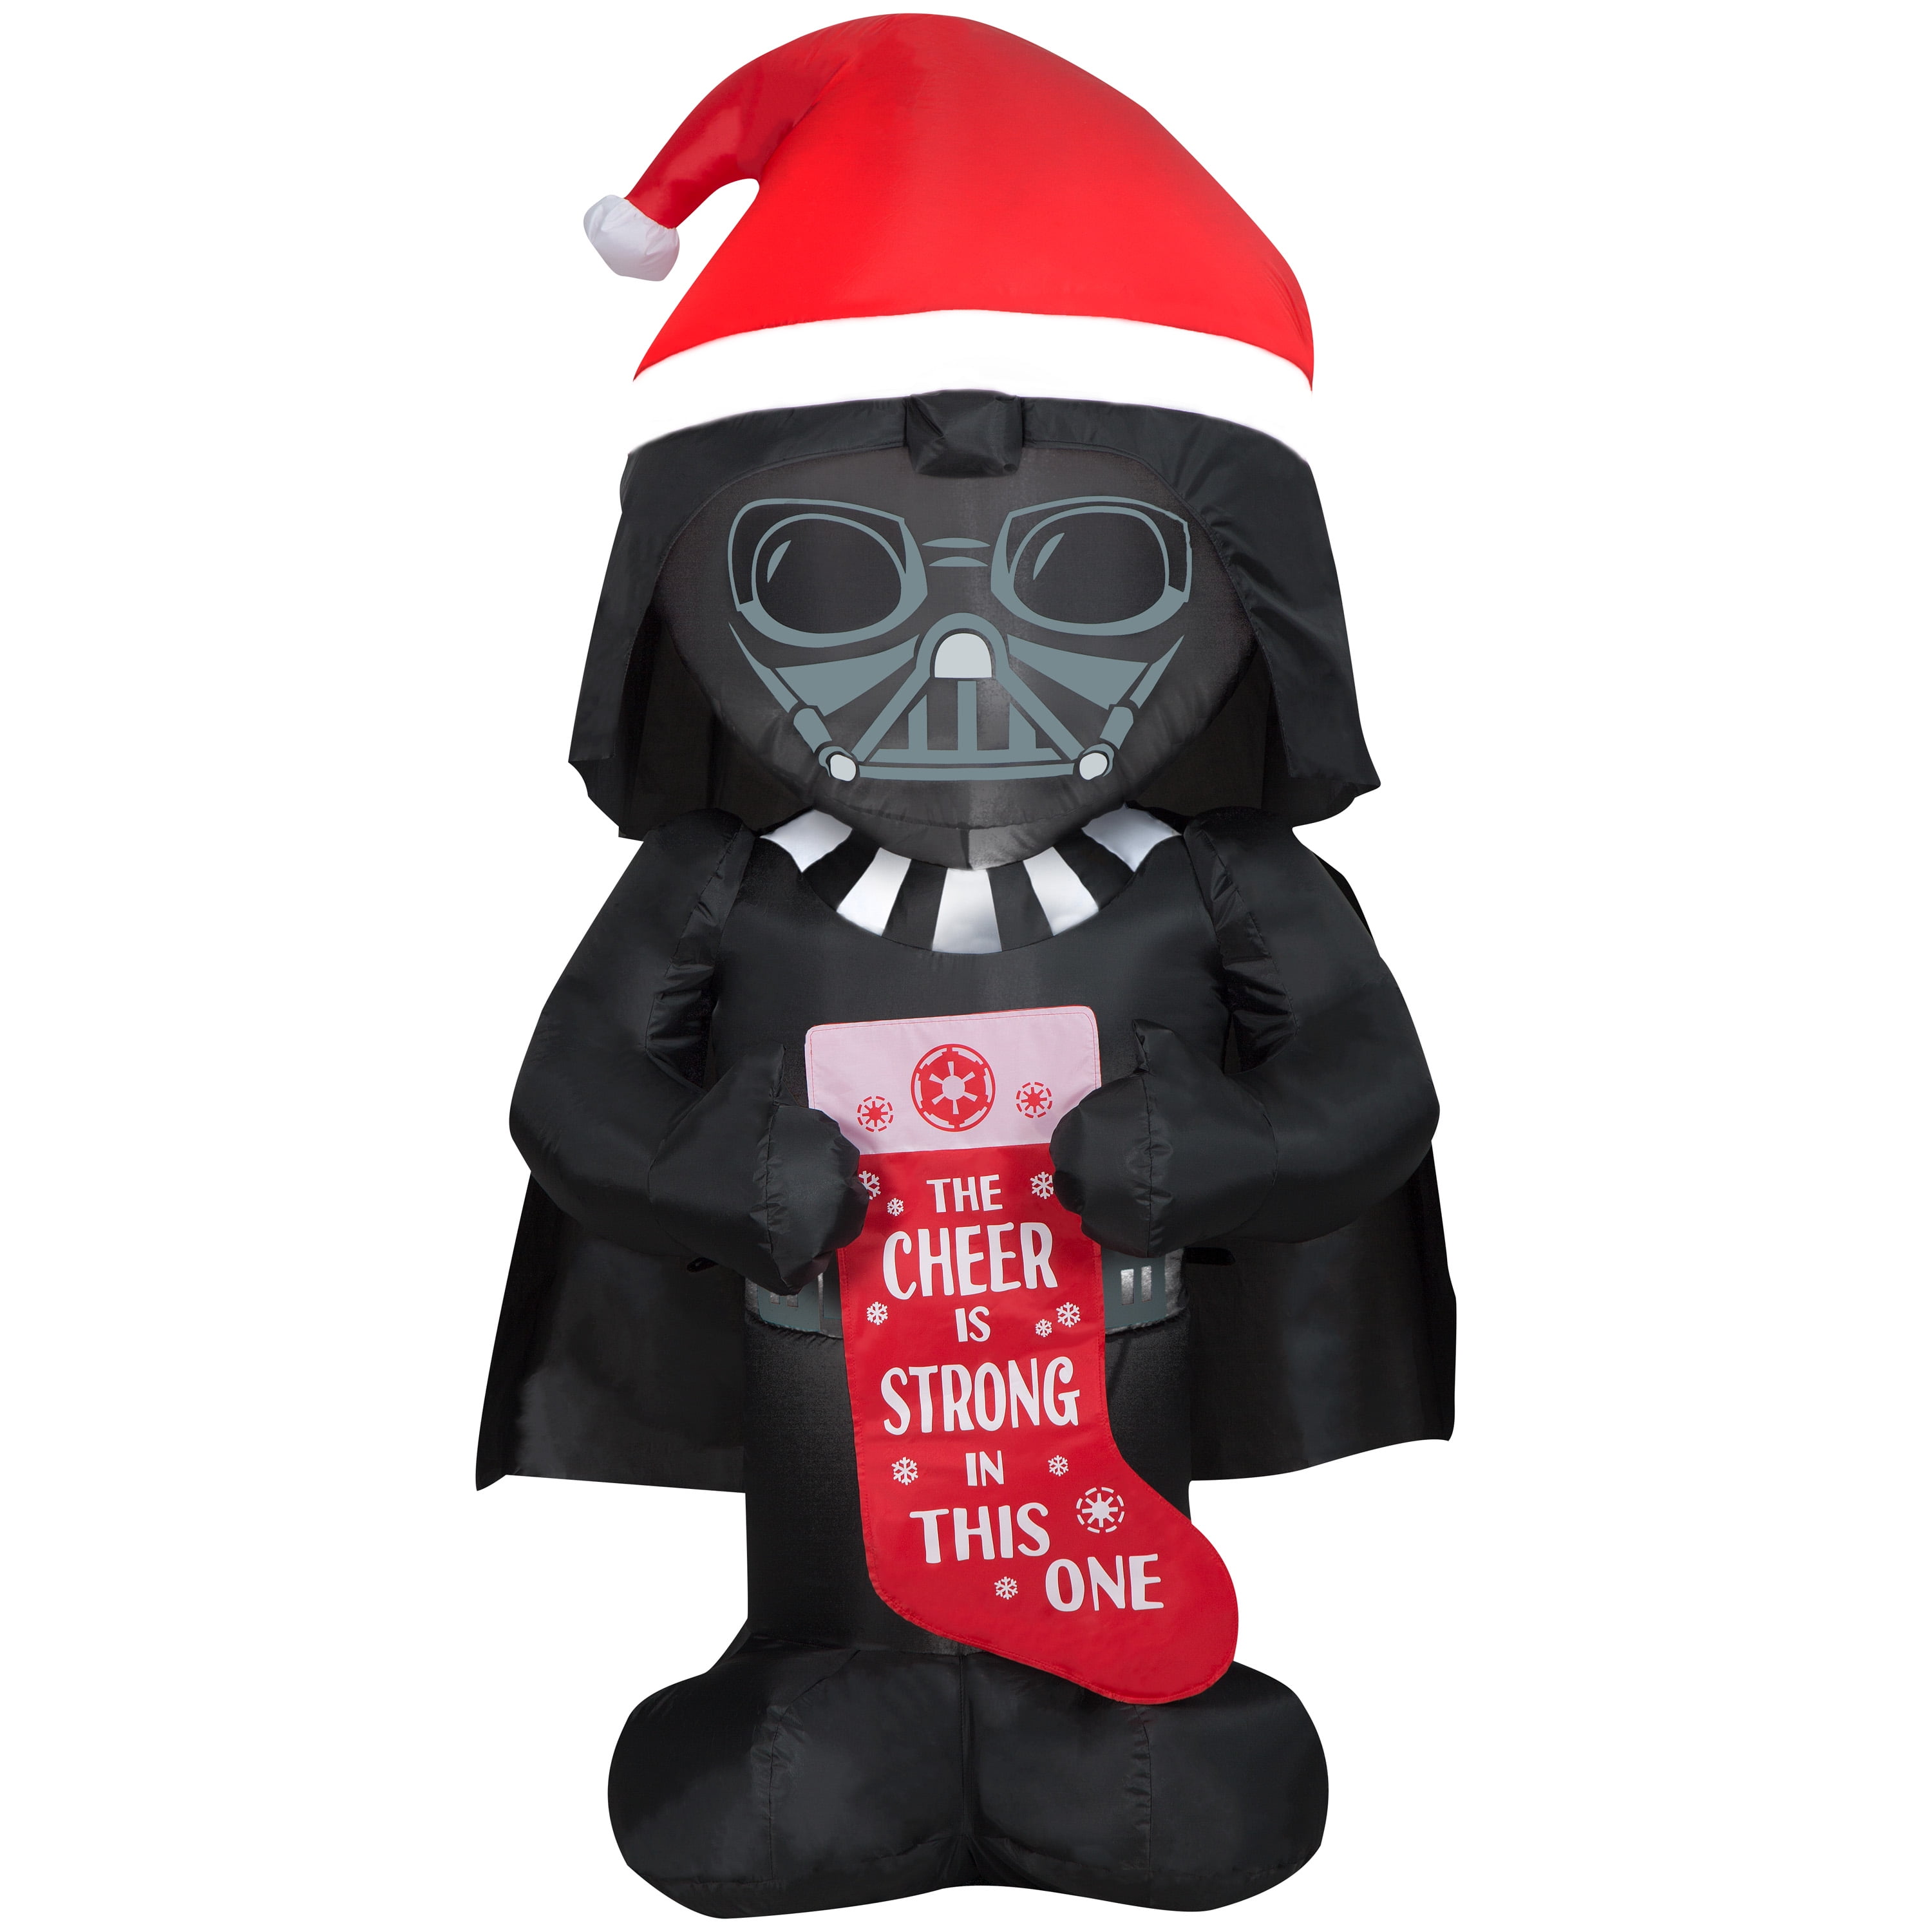 Star Wars Airblown 5 Foot Tall Darth Vader with Santa Hat and Stocking